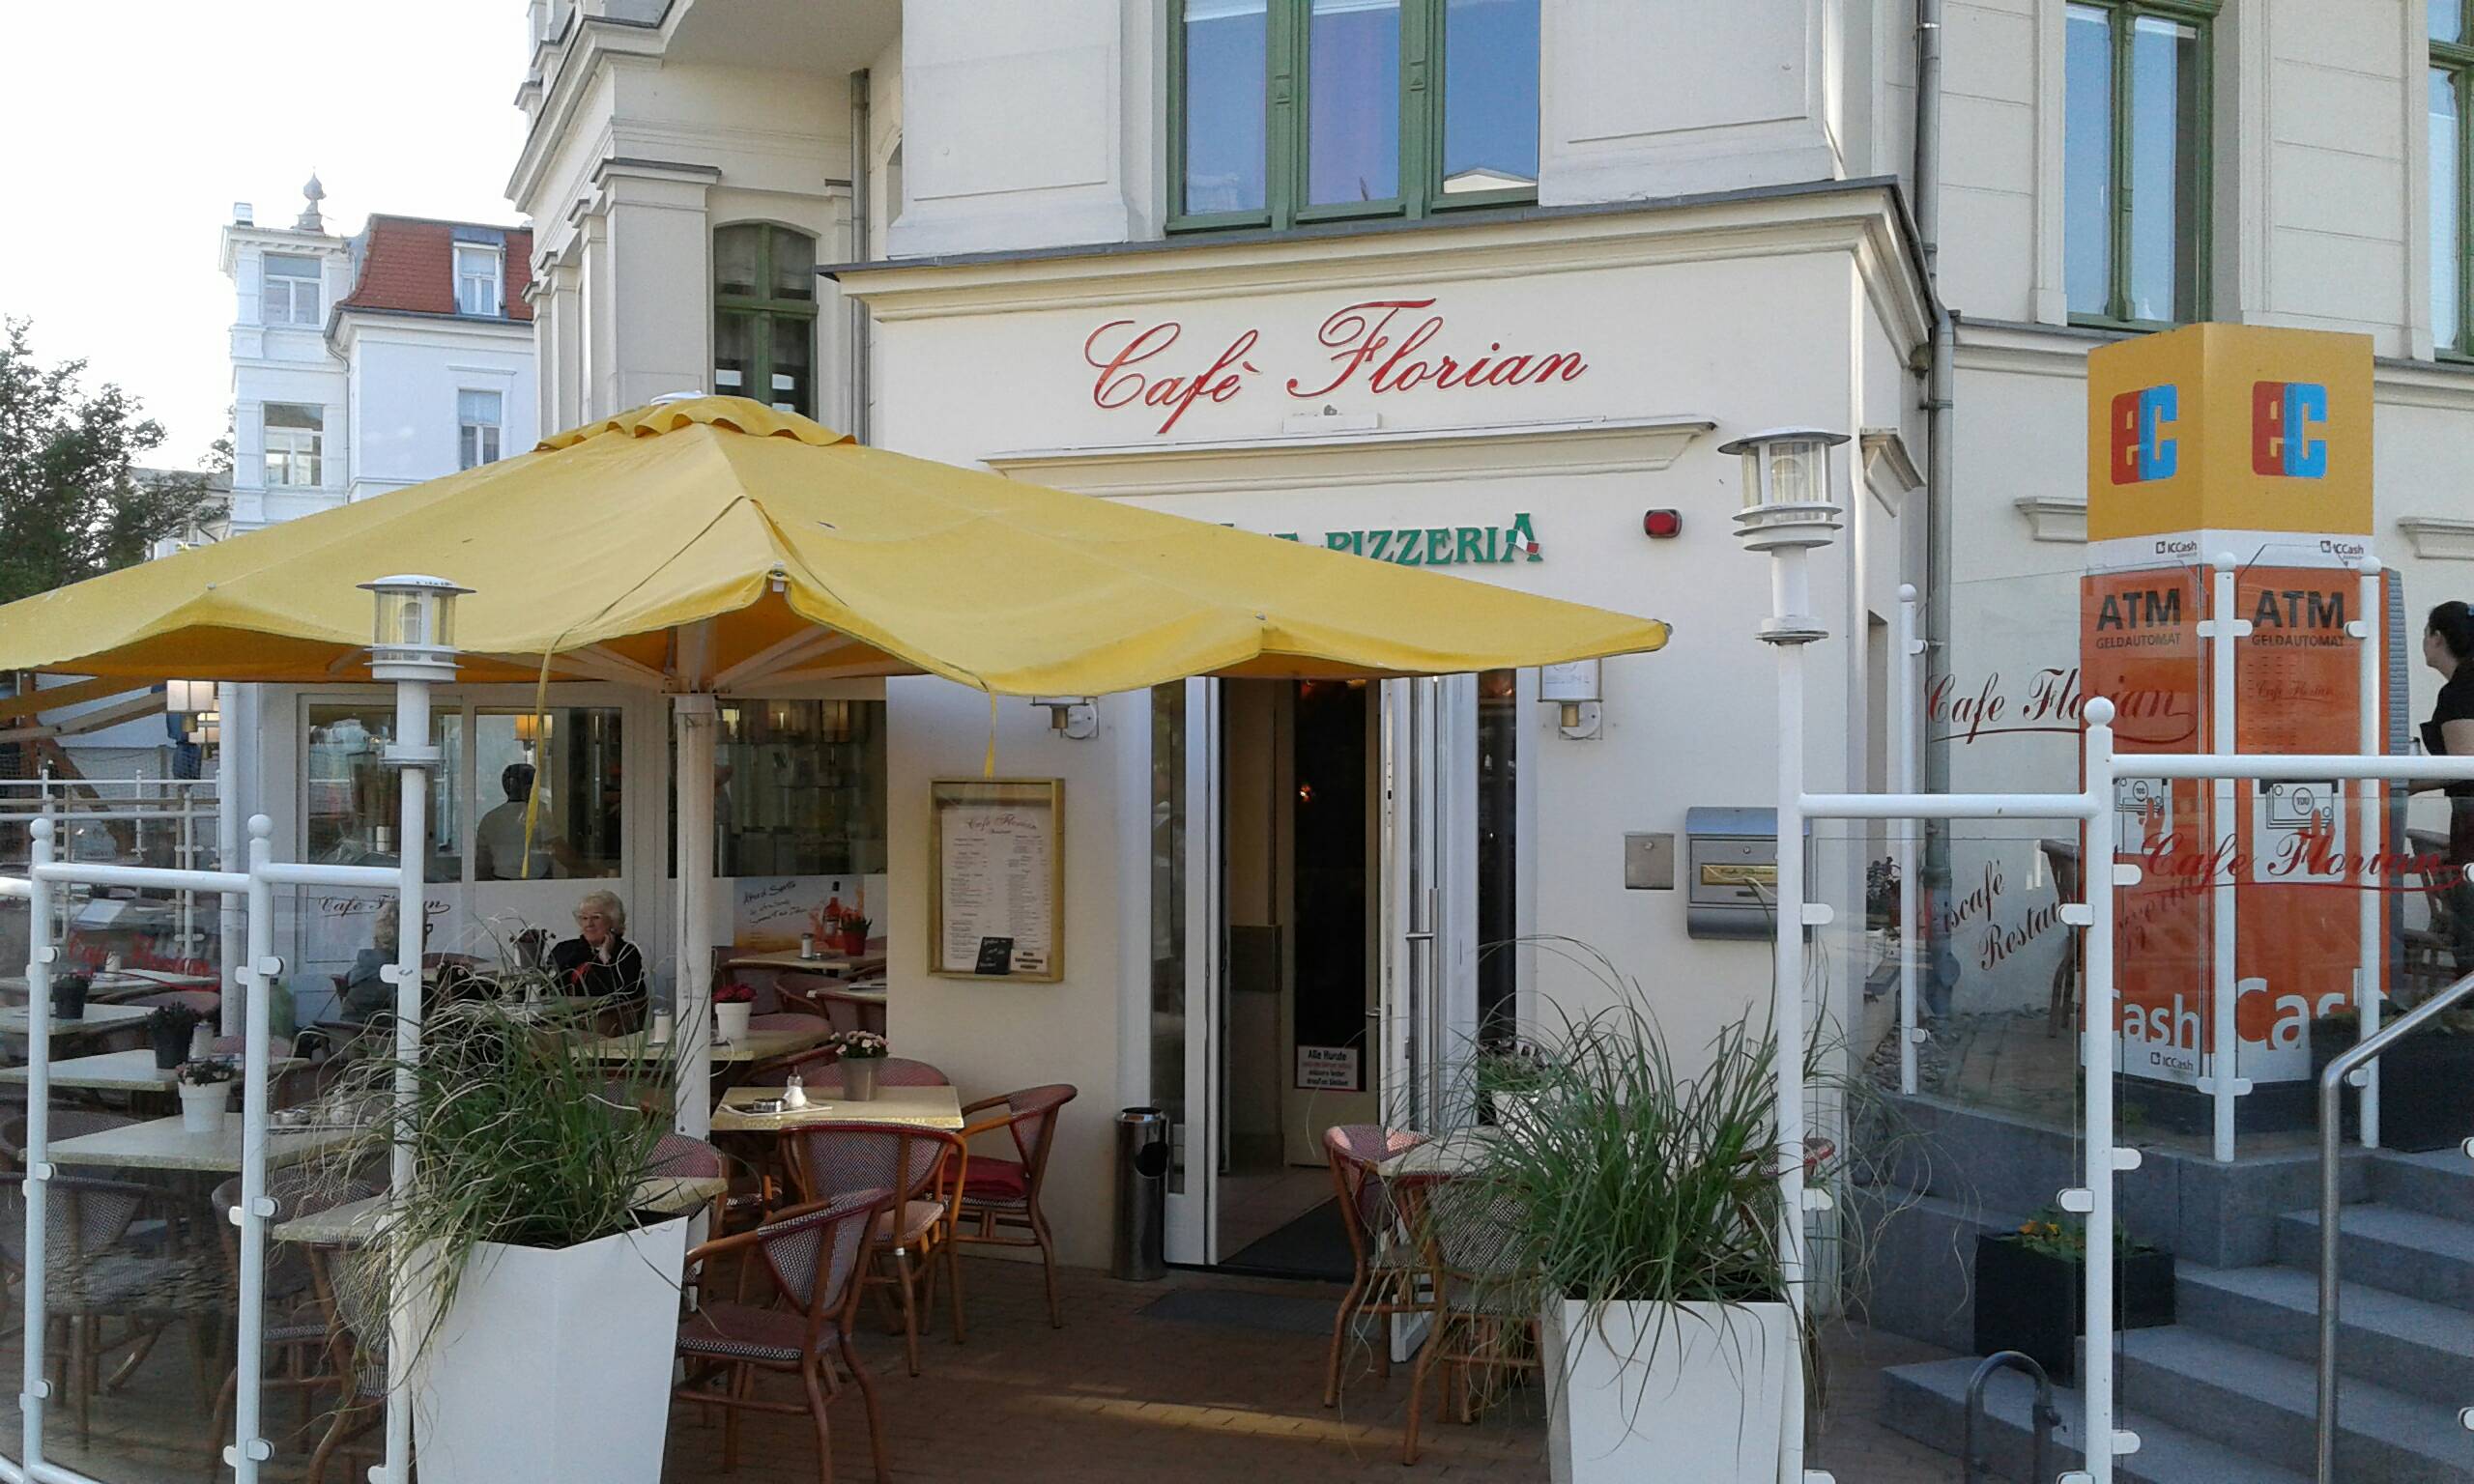 Bild 1 Eiscafe Venezia "Cafe Florian" in Bansin